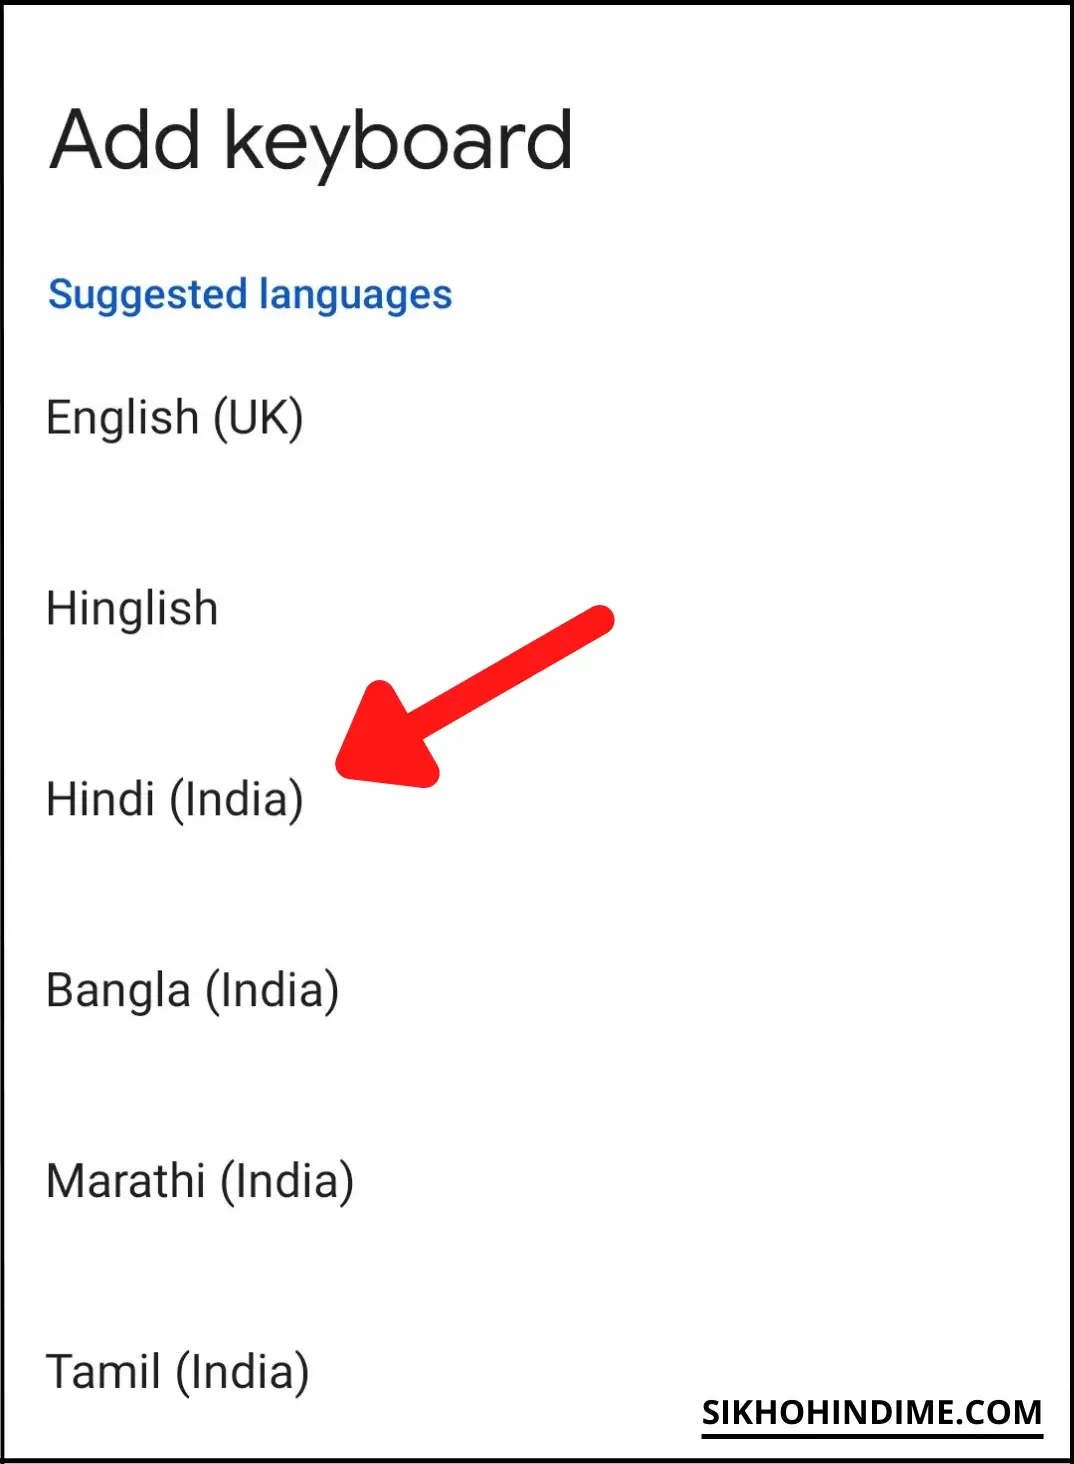 Click on Hindi (India)